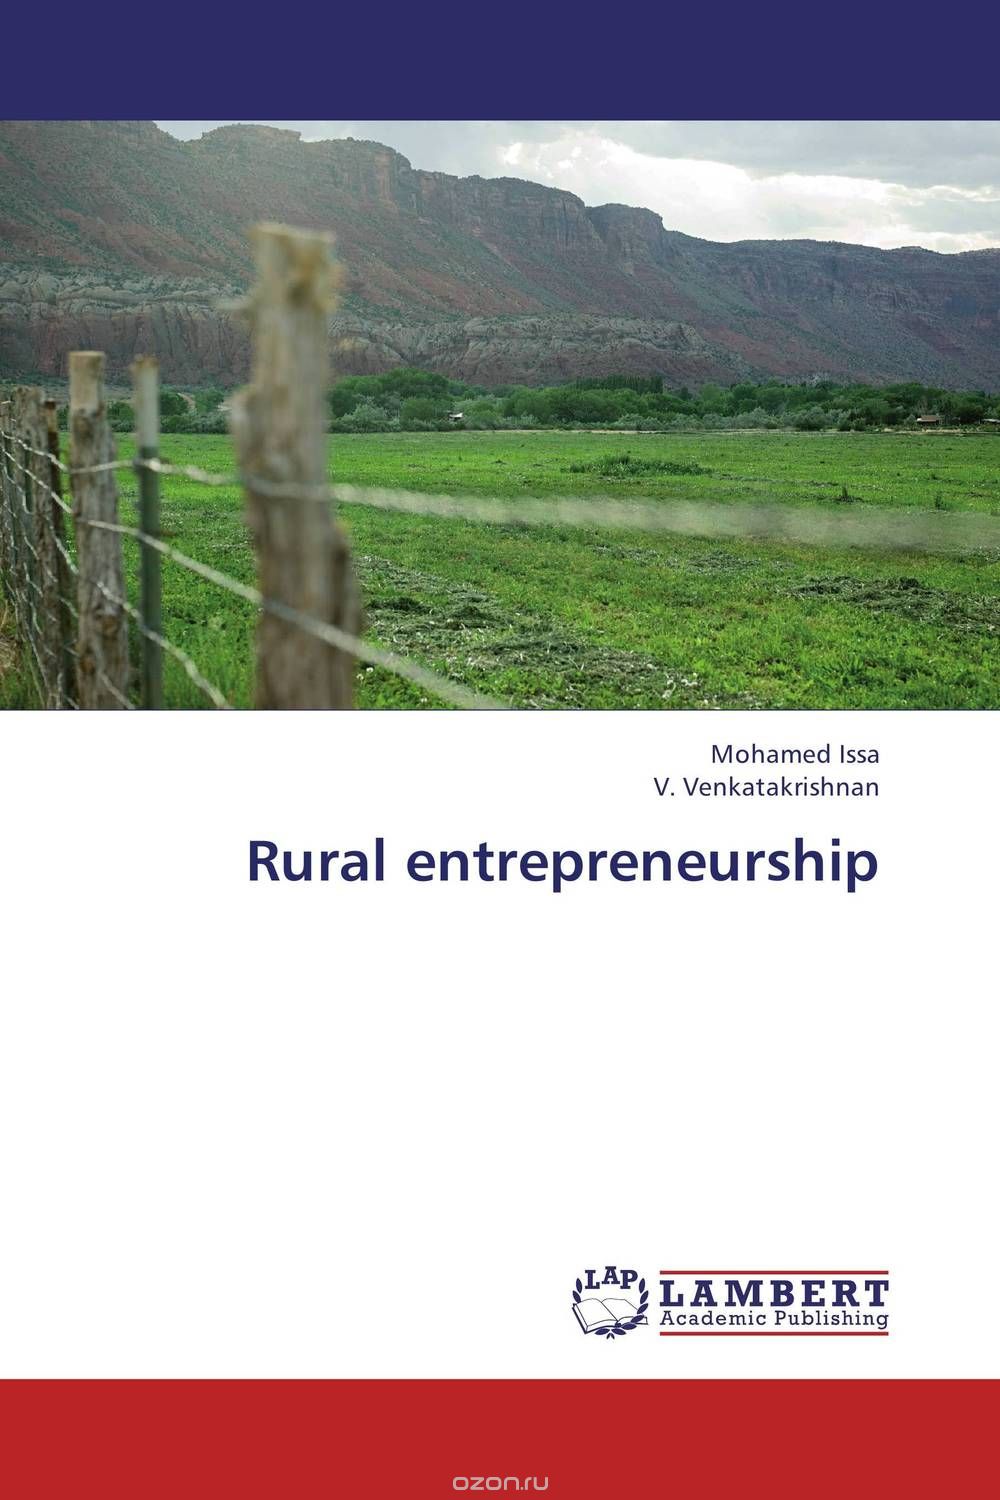 Rural entrepreneurship